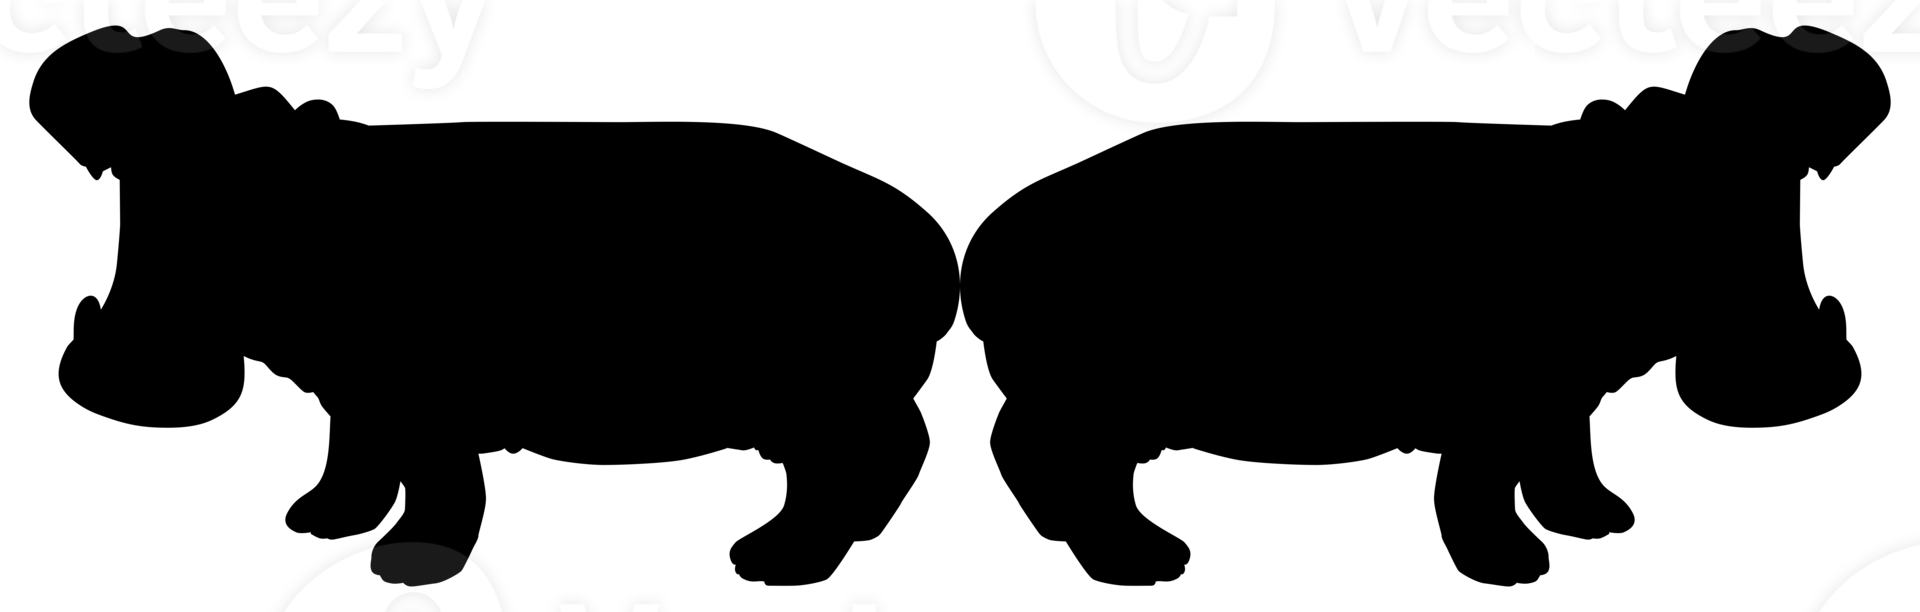 paar- van de nijlpaard. nijlpaard amfibie, silhouet voor logo, kunst illustratie, icoon, symbool, pictogram of grafisch ontwerp element. formaat PNG